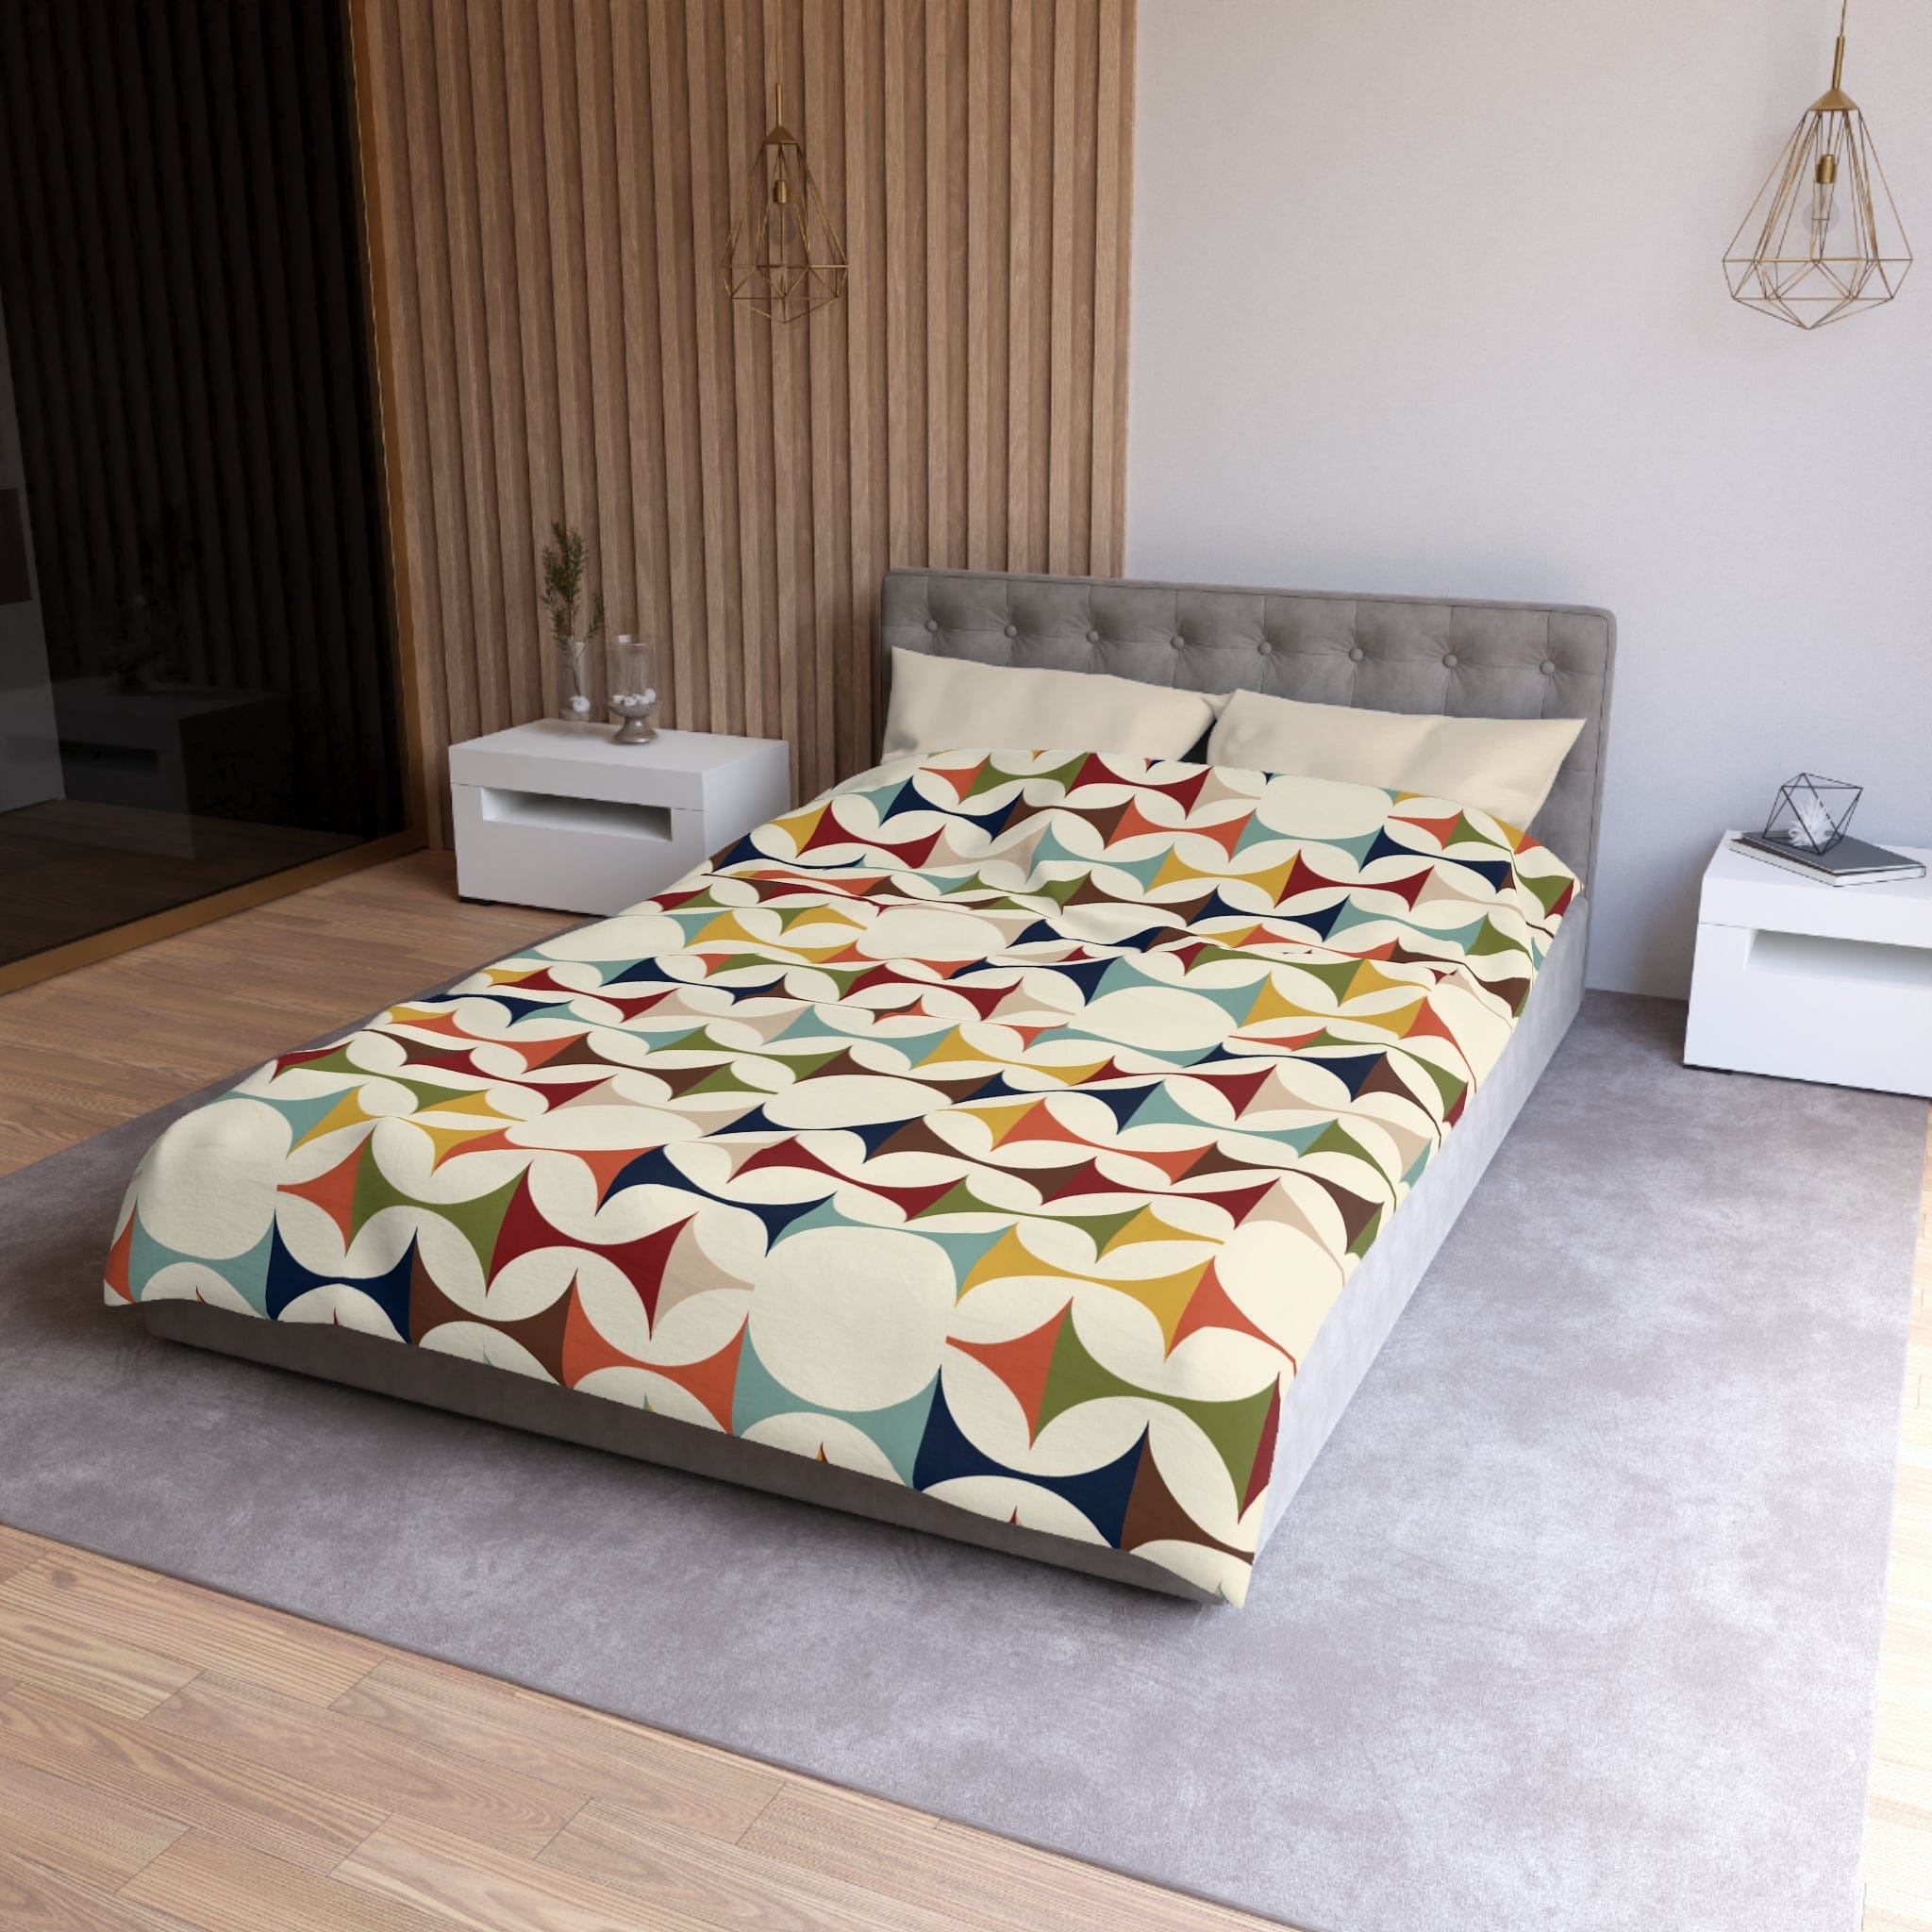 Kate McEnroe New York Retro MCM Duvet Cover, Mid Century Modern Bedding, Vibrant Geometric Scandinavian Modern Danish Bed DecorDuvet Covers36267608590040283305